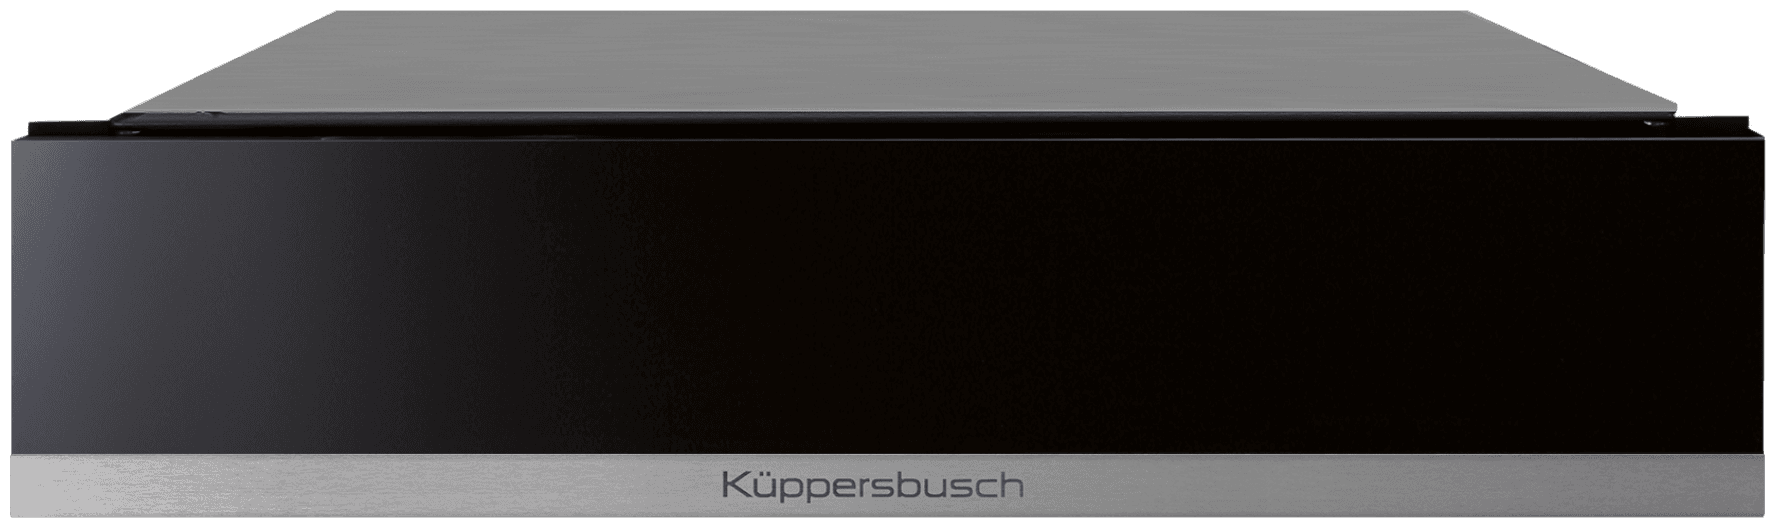 Kuppersbusch CSV 6800.0 S1 - фотография № 1